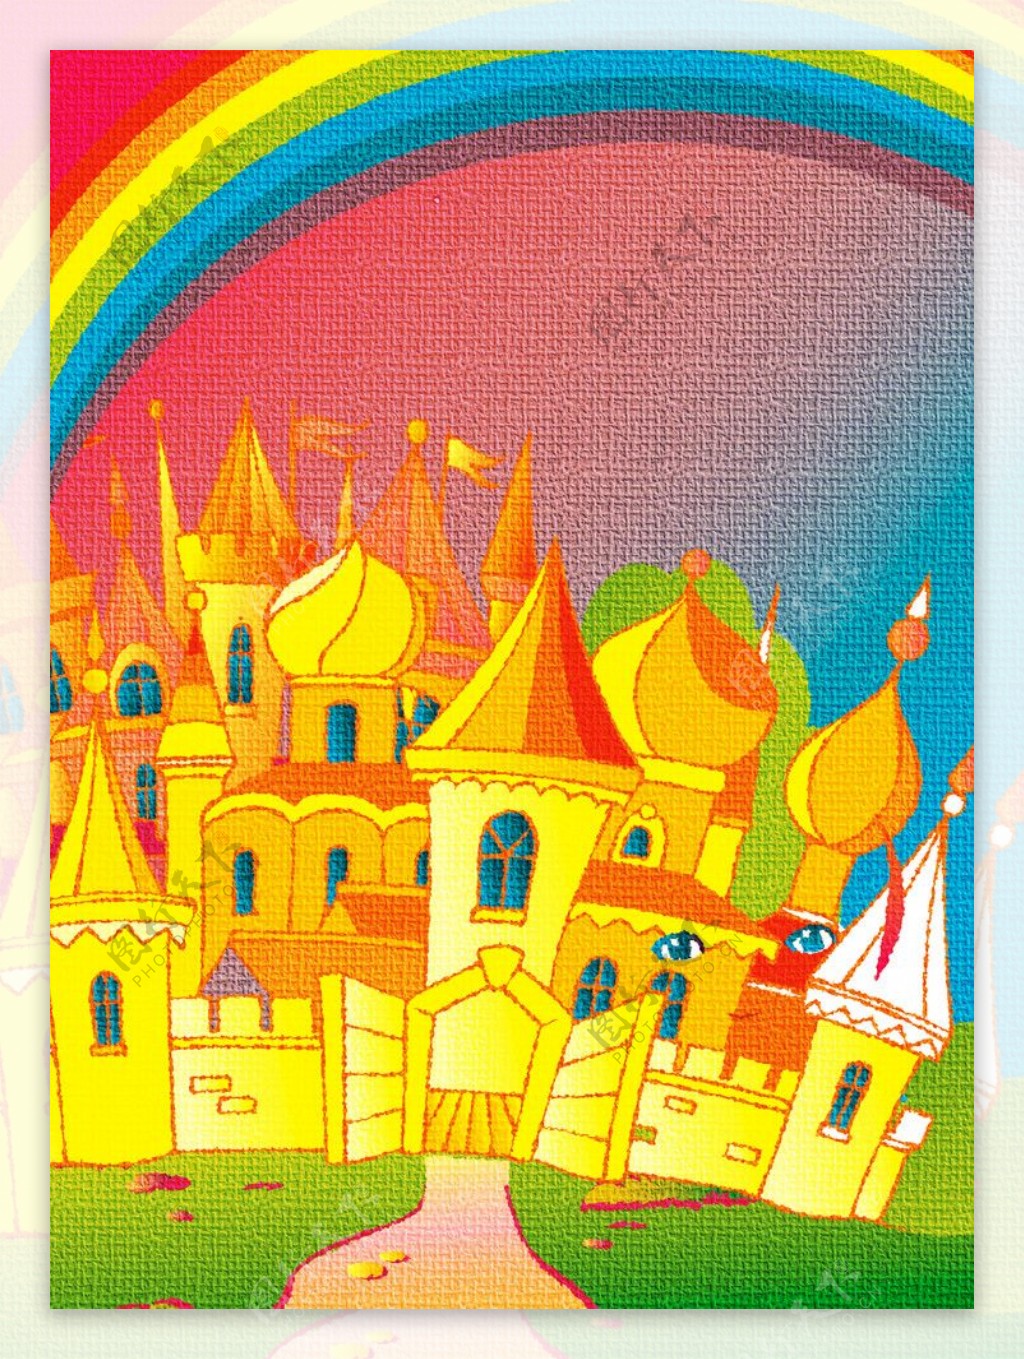 彩虹下的城堡图片